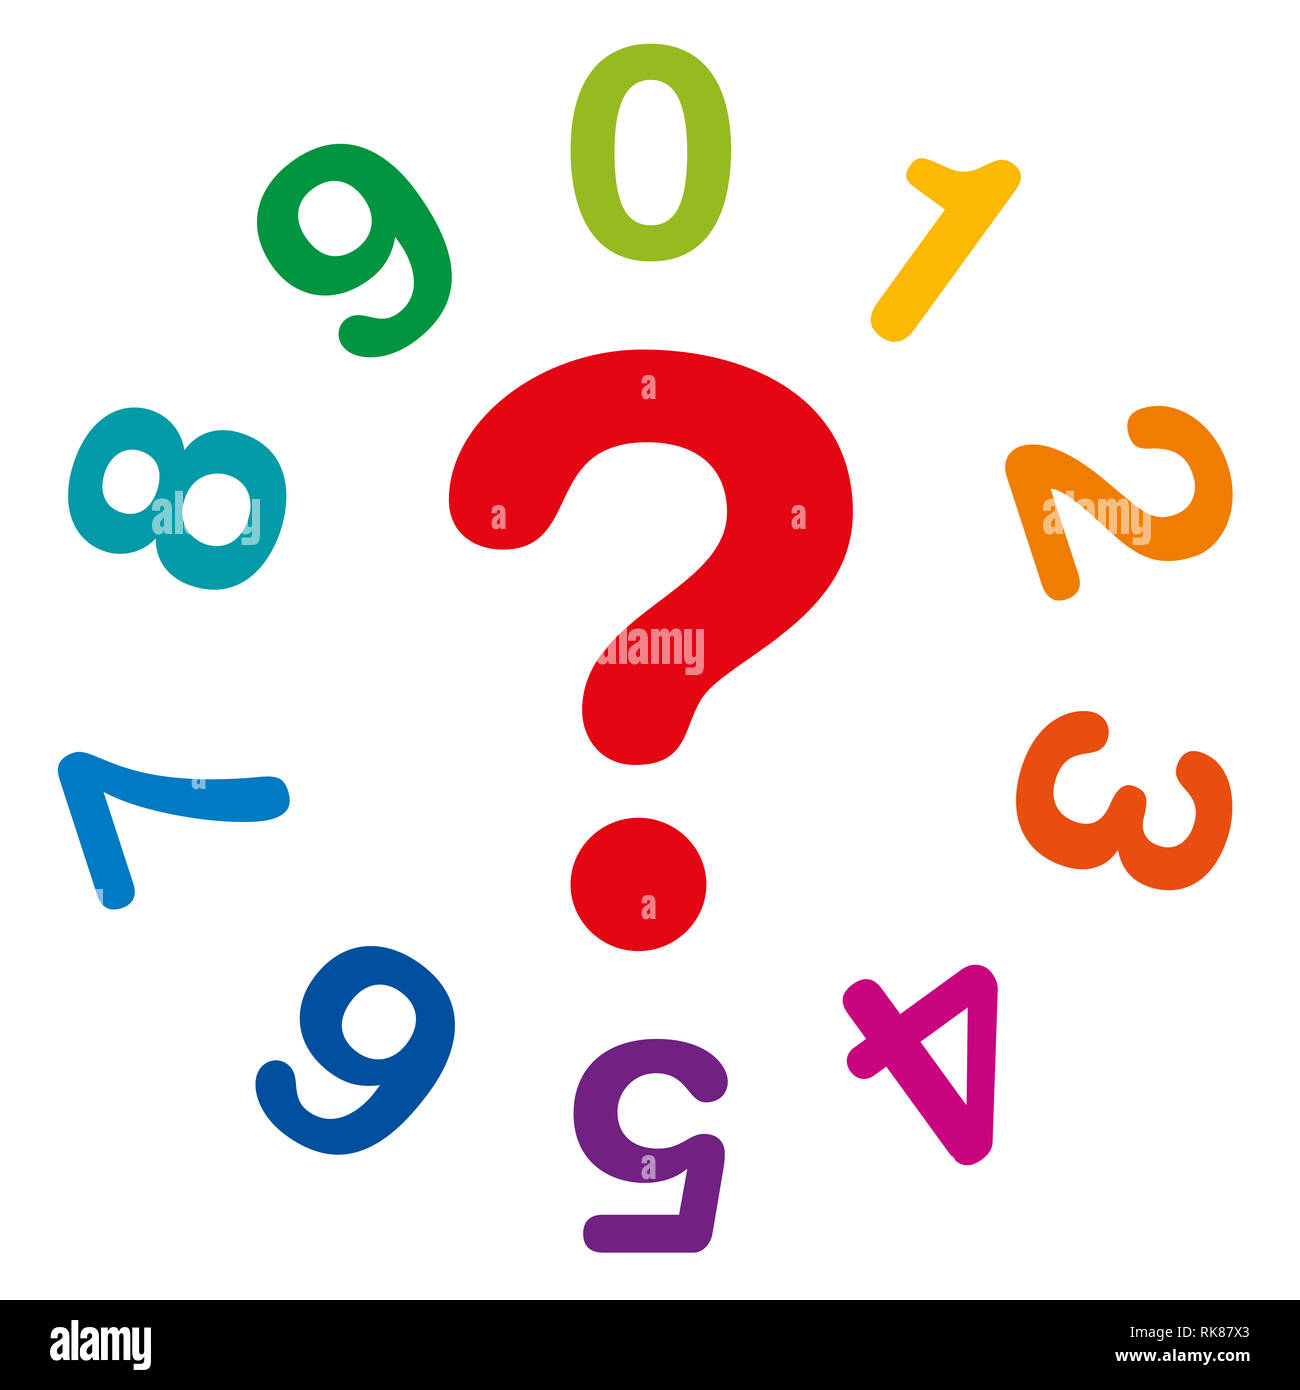 Dieci rainbow colorati numeri da uno a zero, formando un cerchio con il punto interrogativo rosso nel mezzo come simbolo per la numerologia e fortuna raccontare. Foto Stock